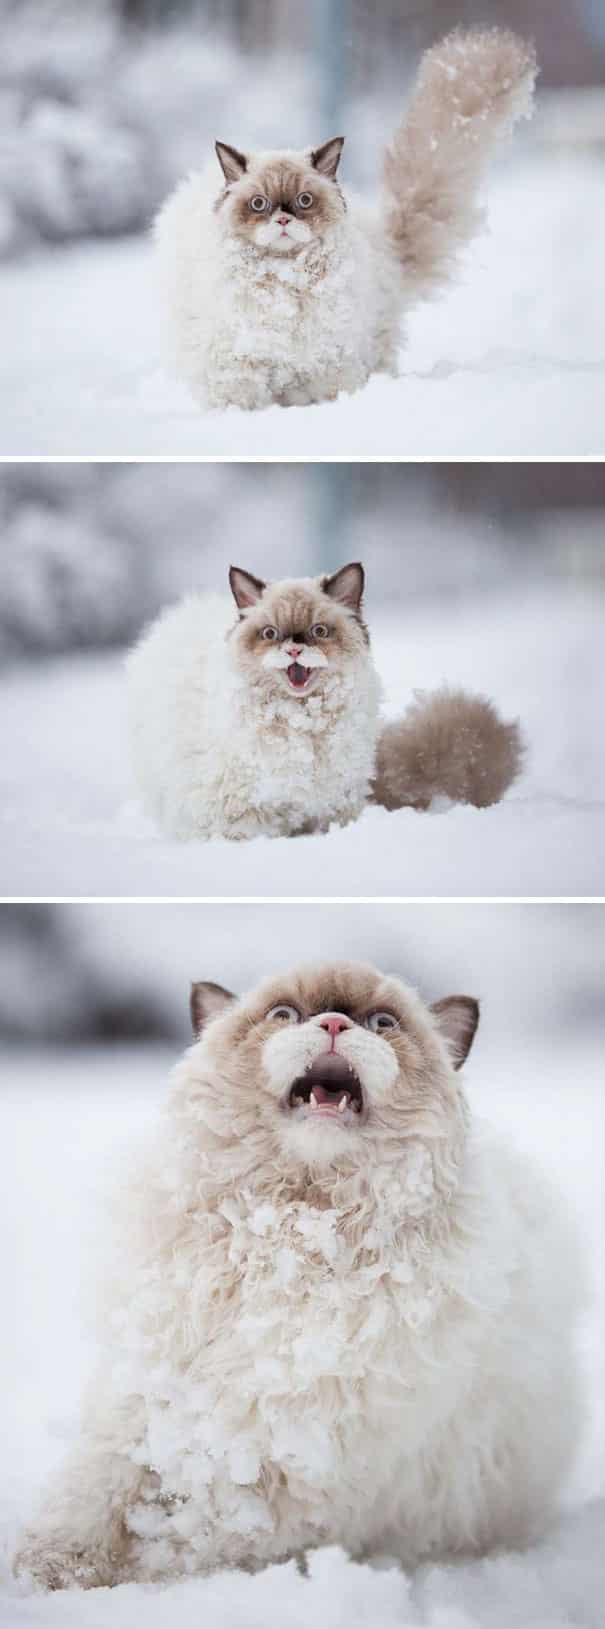 кошка на снегу